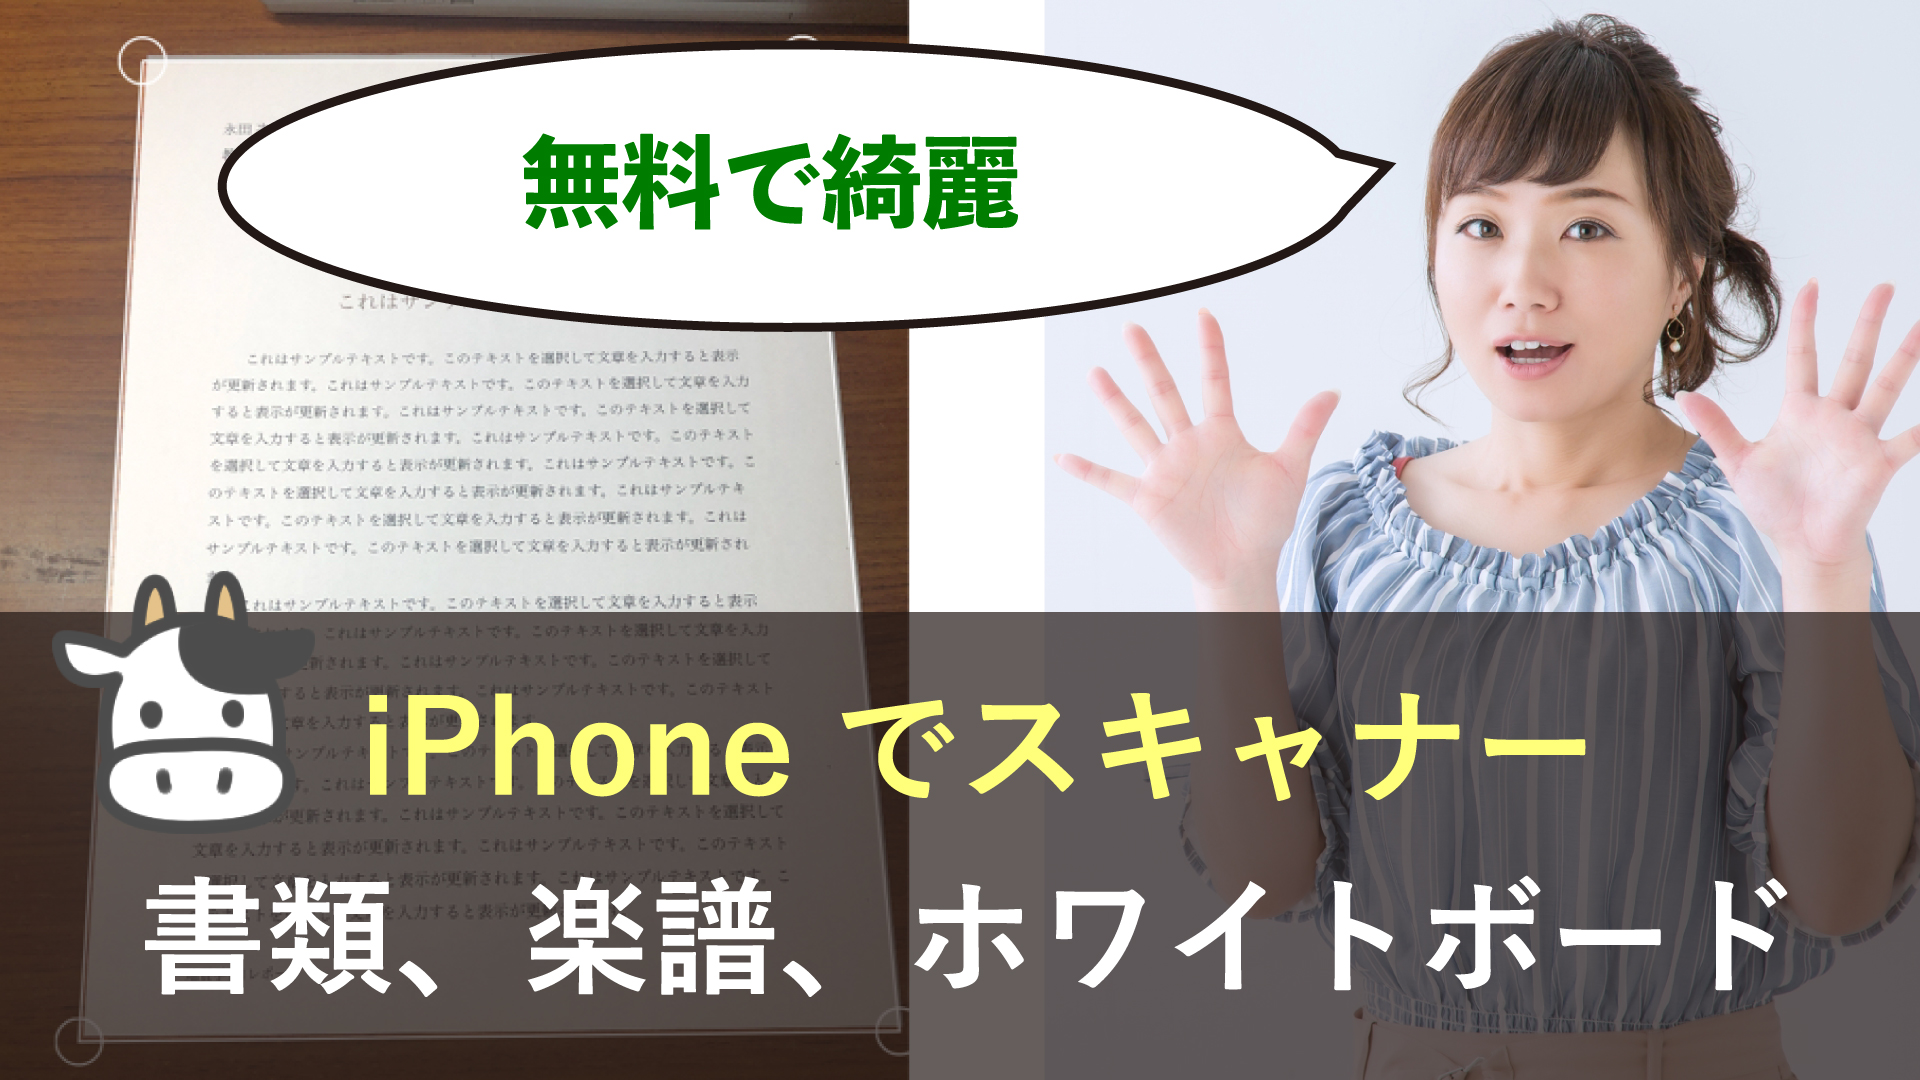 Iphone で書類をスキャン 無料 する方法 ホワイトボードも 岩崎将史のブログ